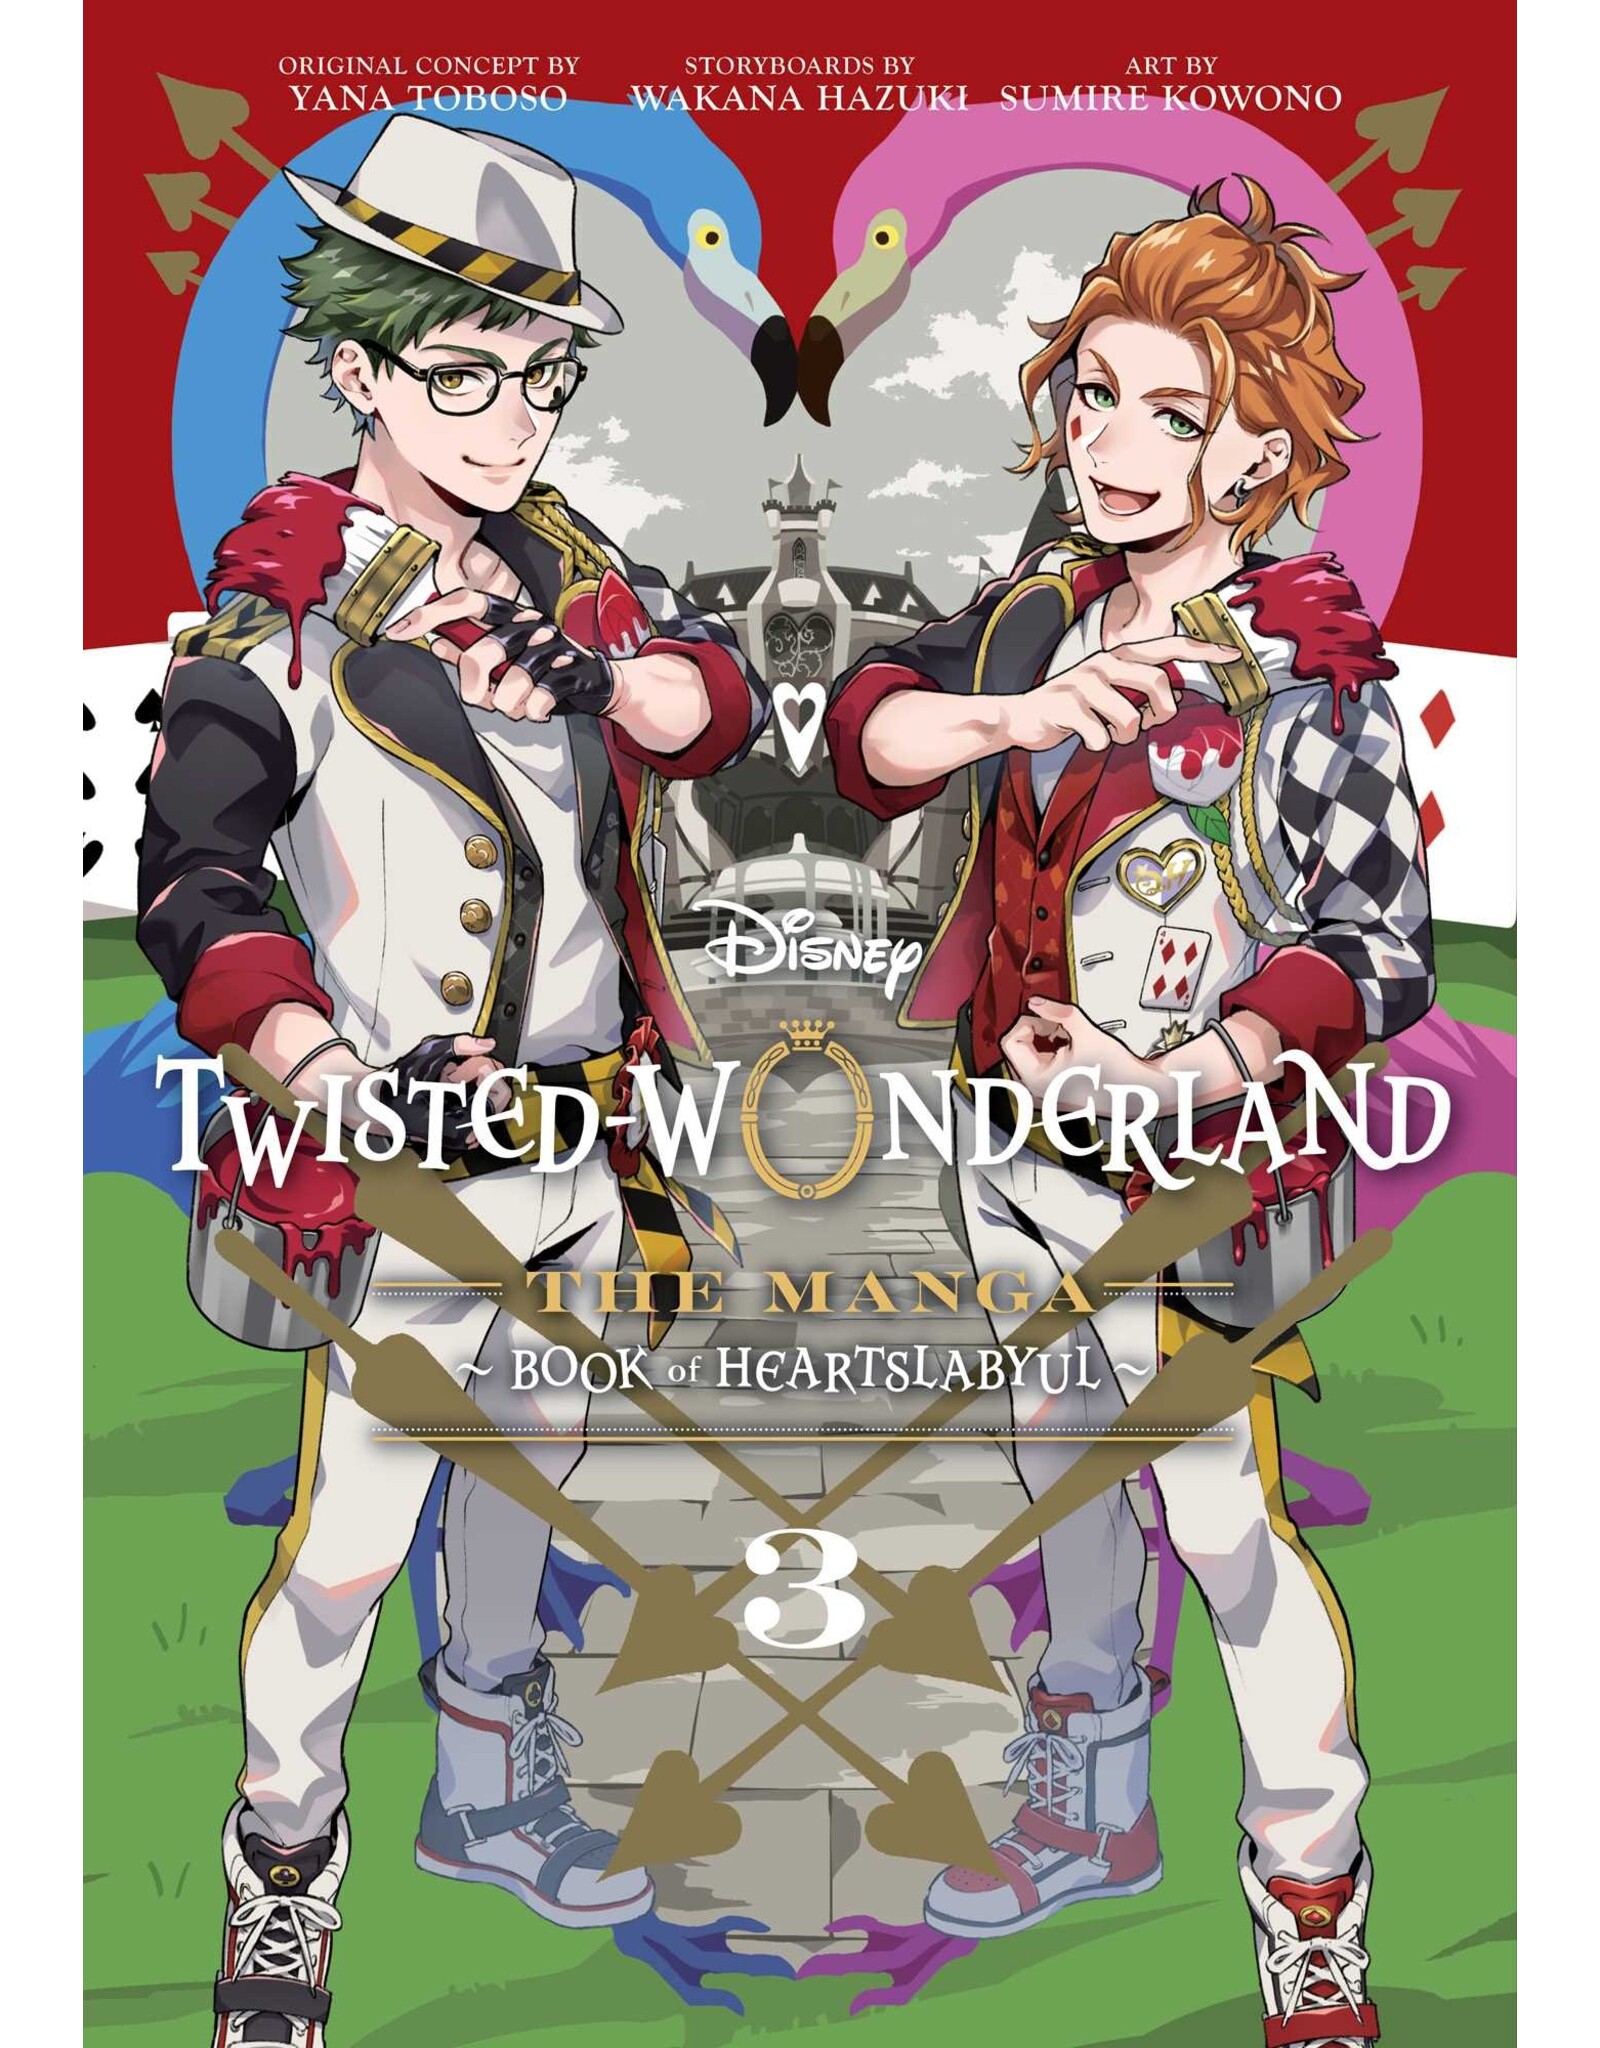 Twisted Wonderland The Manga 03: Book of Heartslabyul (Engelstalig) - Manga